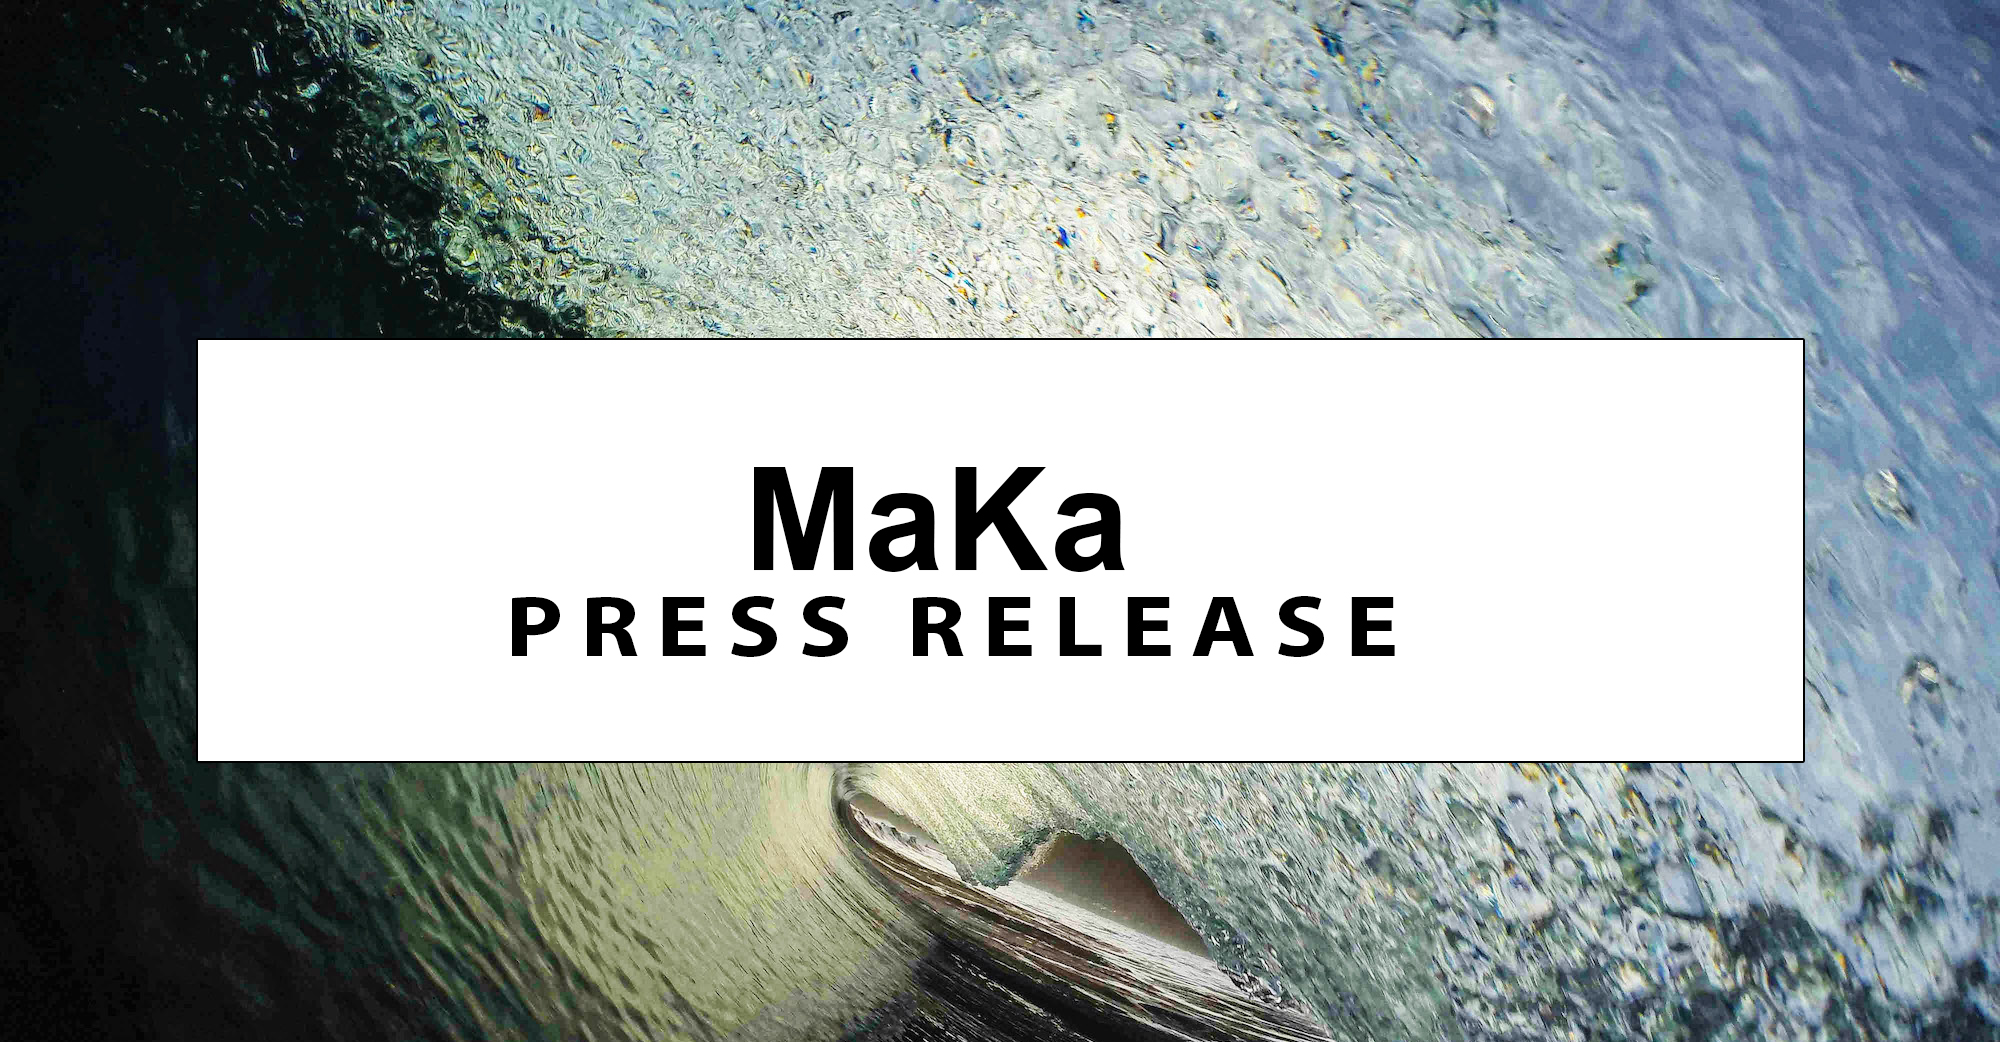 Press Release – Mālama i ke Kai ʻo Waipiʻo supports the stand against tourism